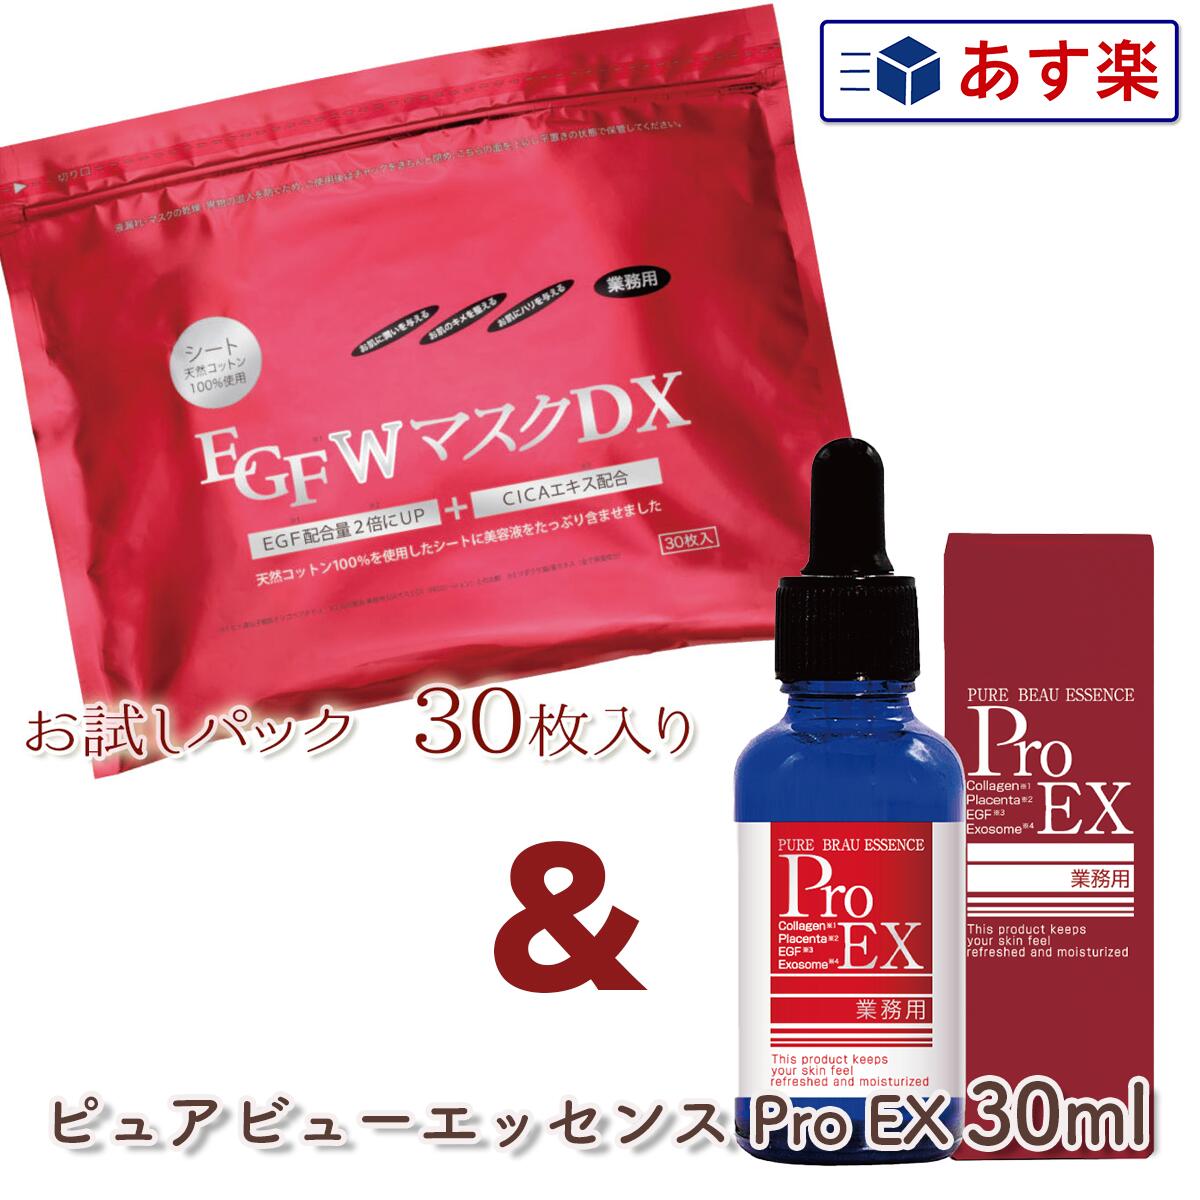 EGF Wマスク DX 30枚入り + ピュアビューエッセンスプロ EX 30ml セット プレゼント ギフト